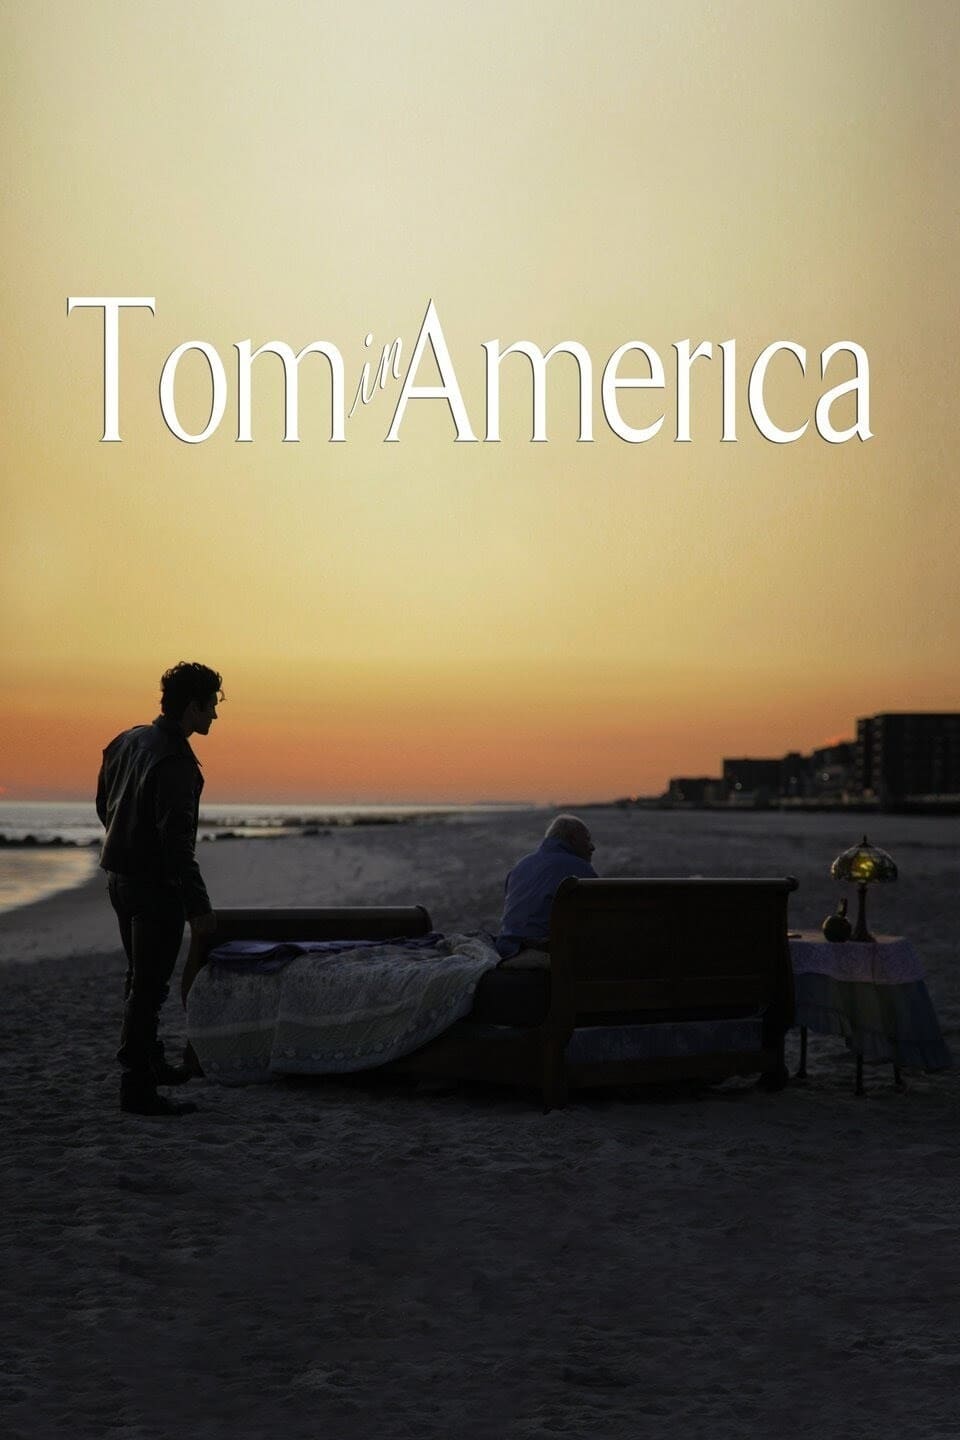 Tom in America (2014)